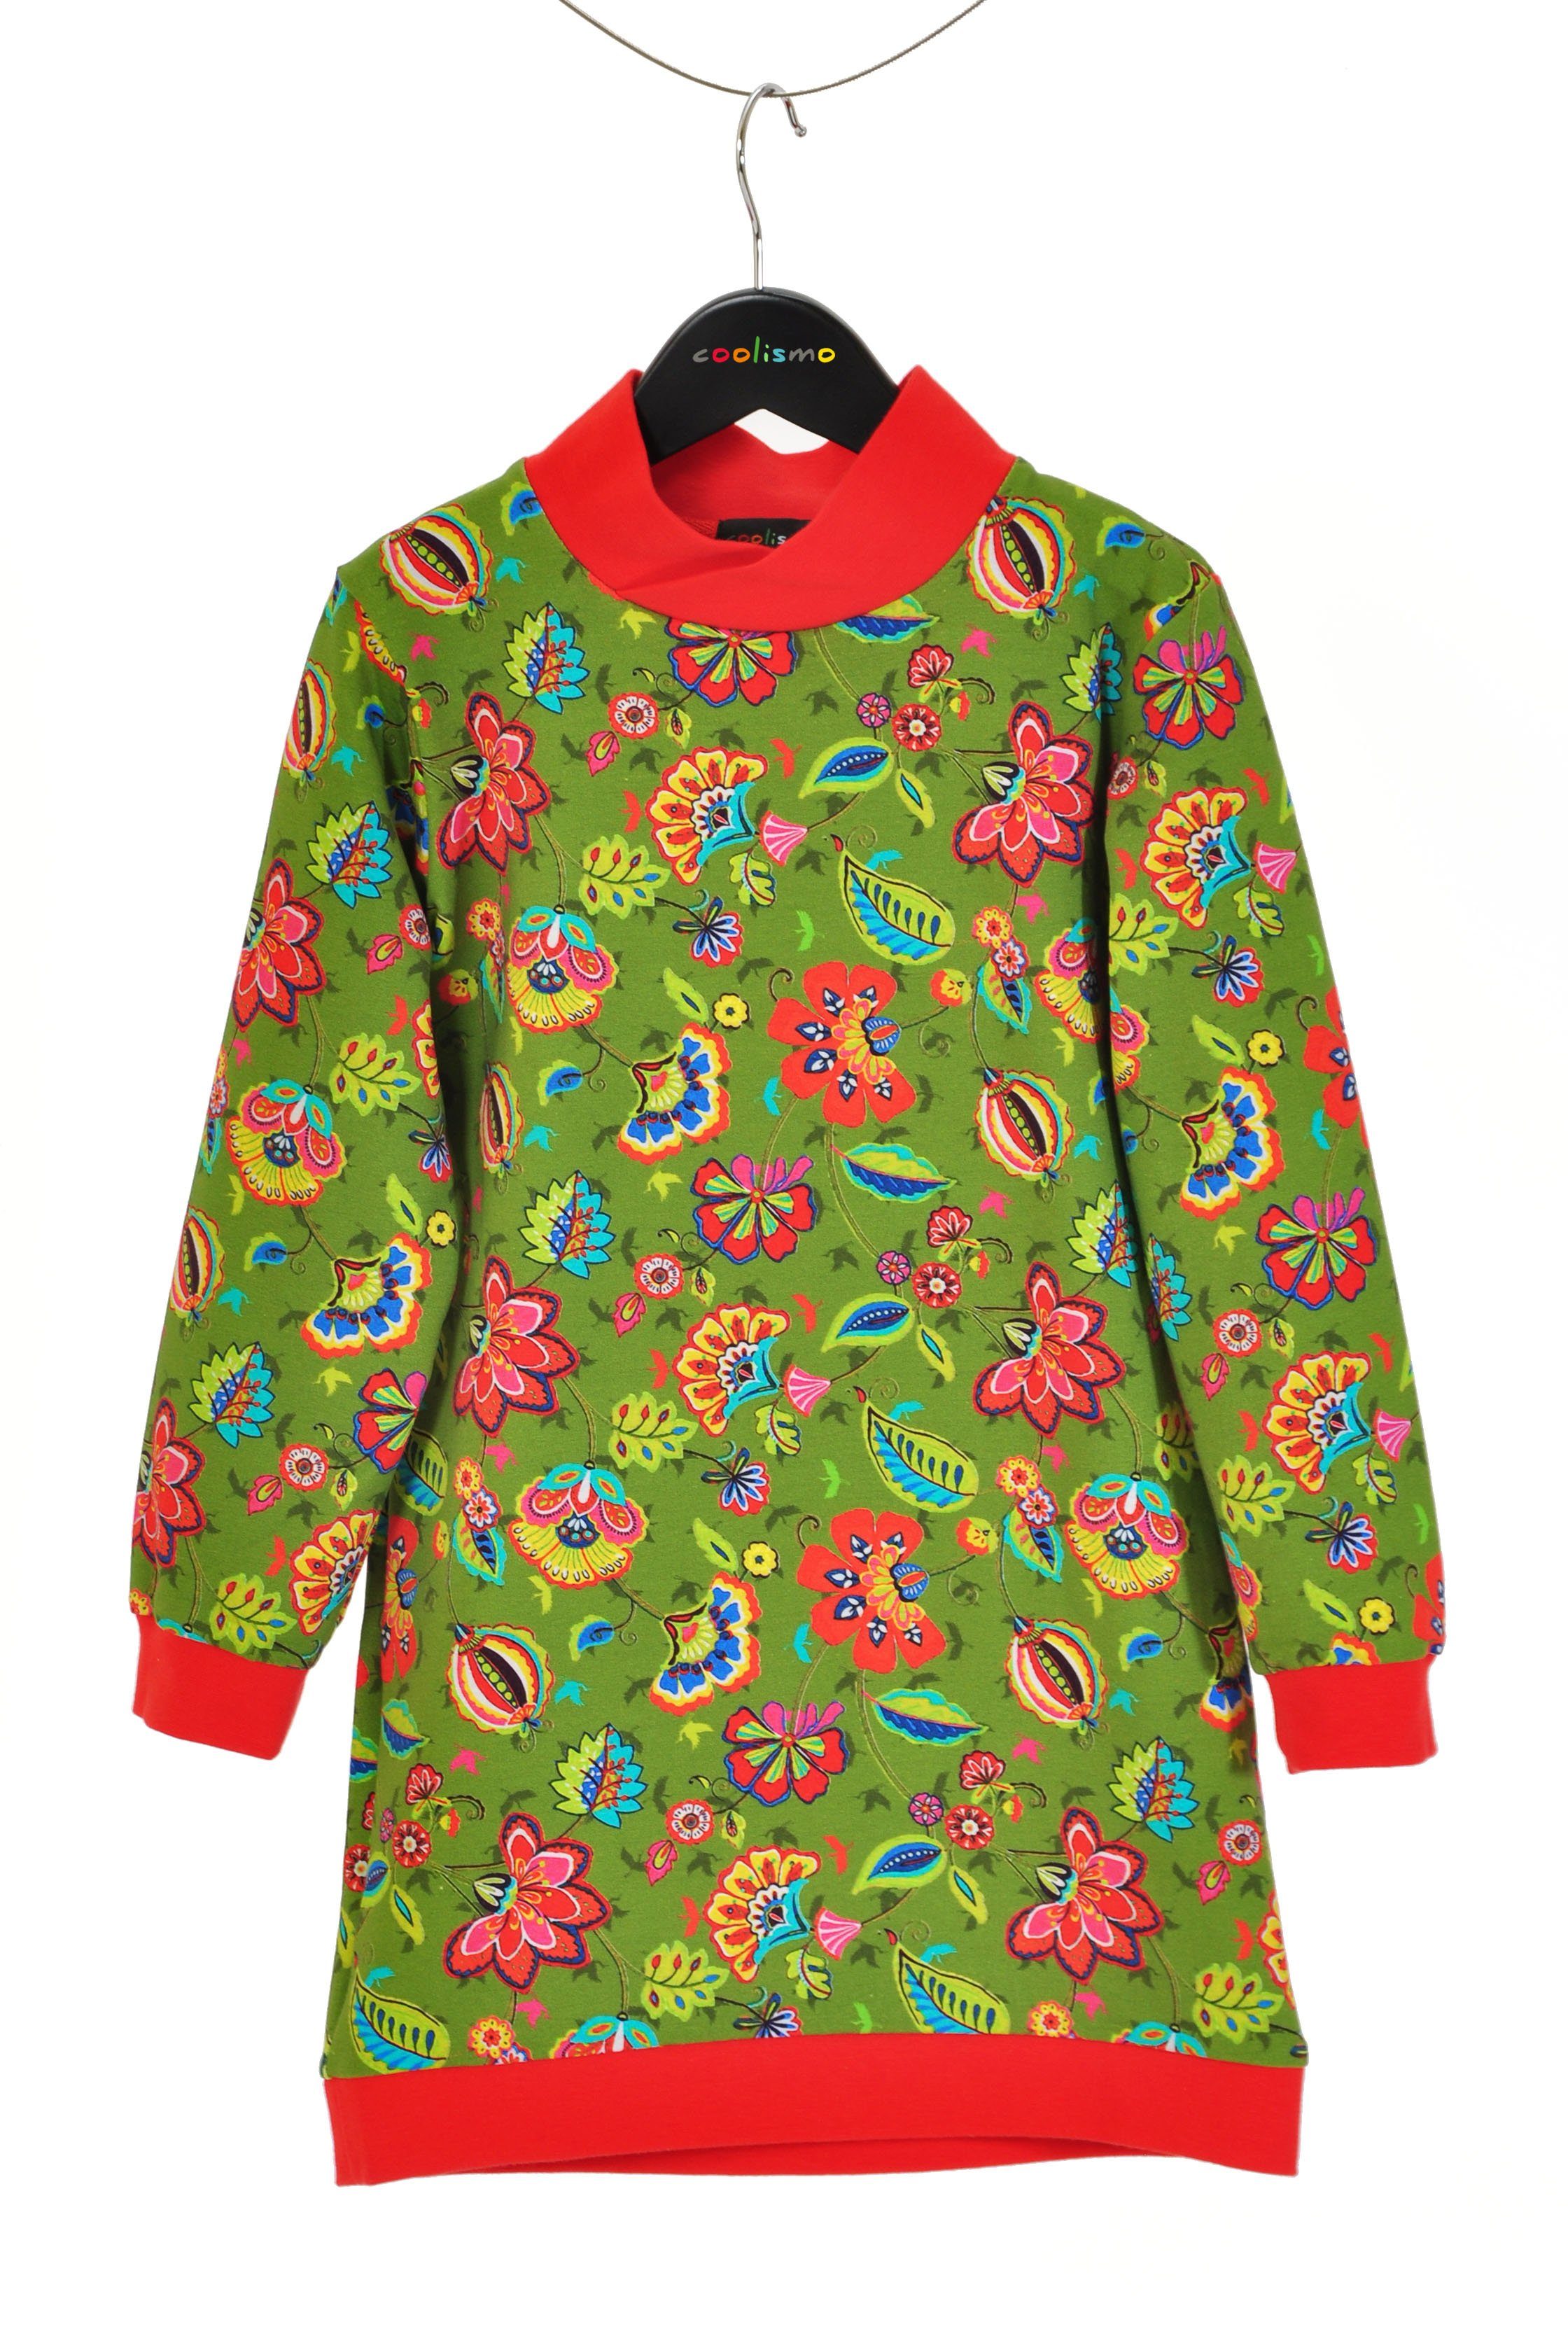 Mädchen mit coolismo europäische Produktion Sweatshirt oliv coole Blumen für Sweatkleid Motivdruck Kleid